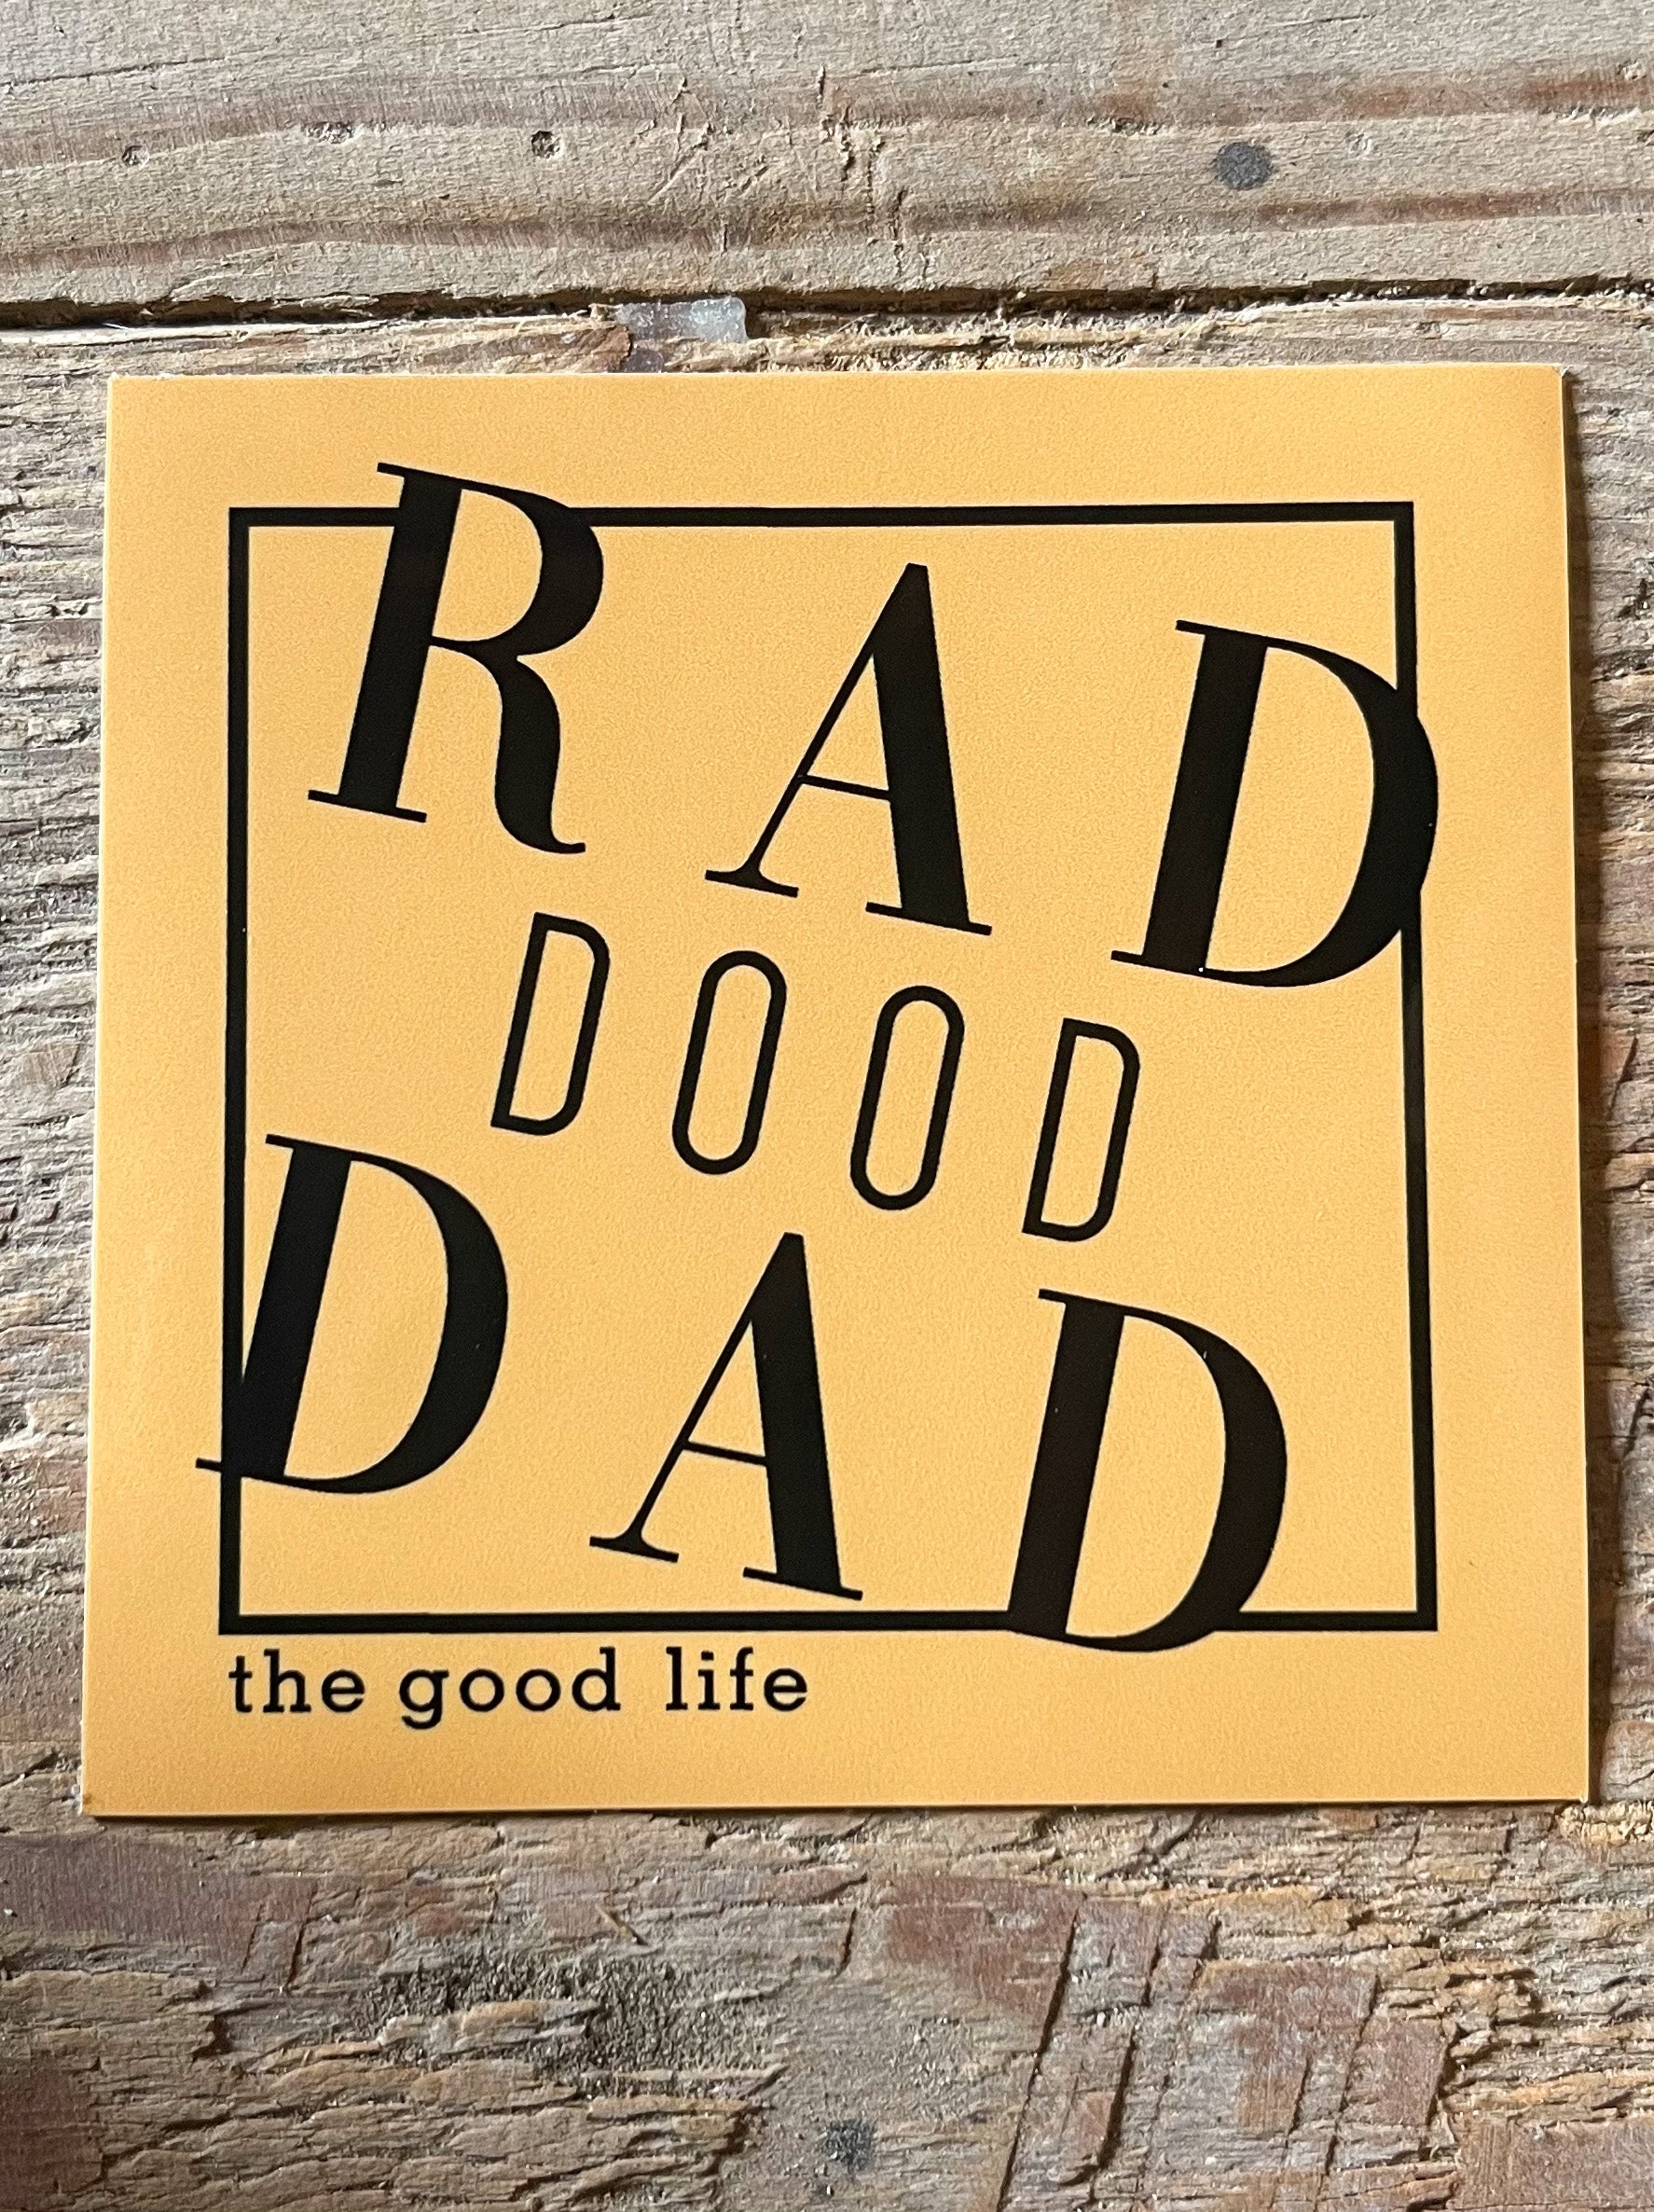 Rad DOOD Dad Sticker - Mustard